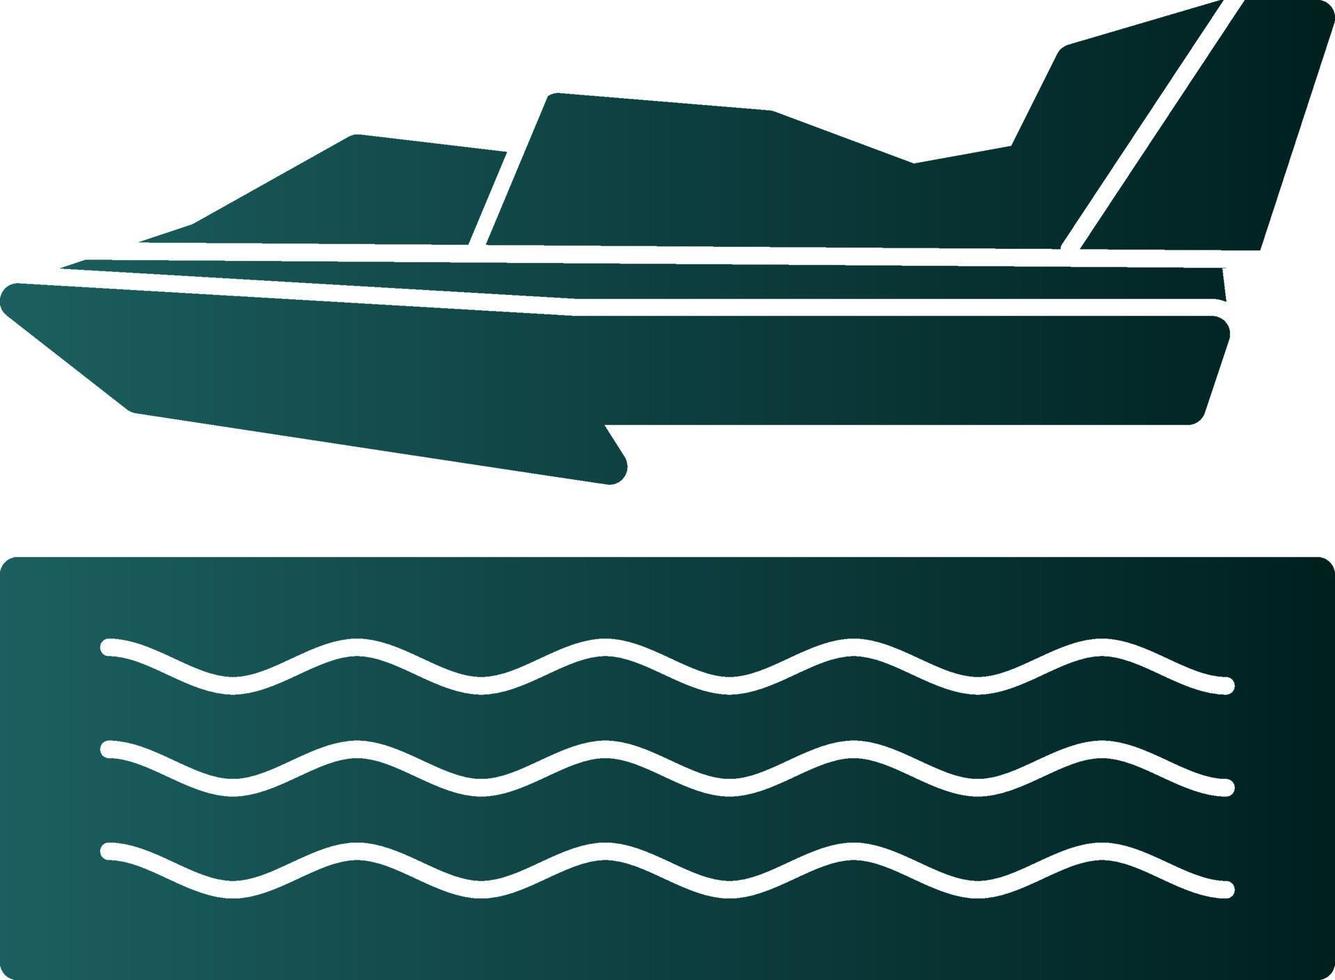 design de ícone de vetor de corrida de hidroavião